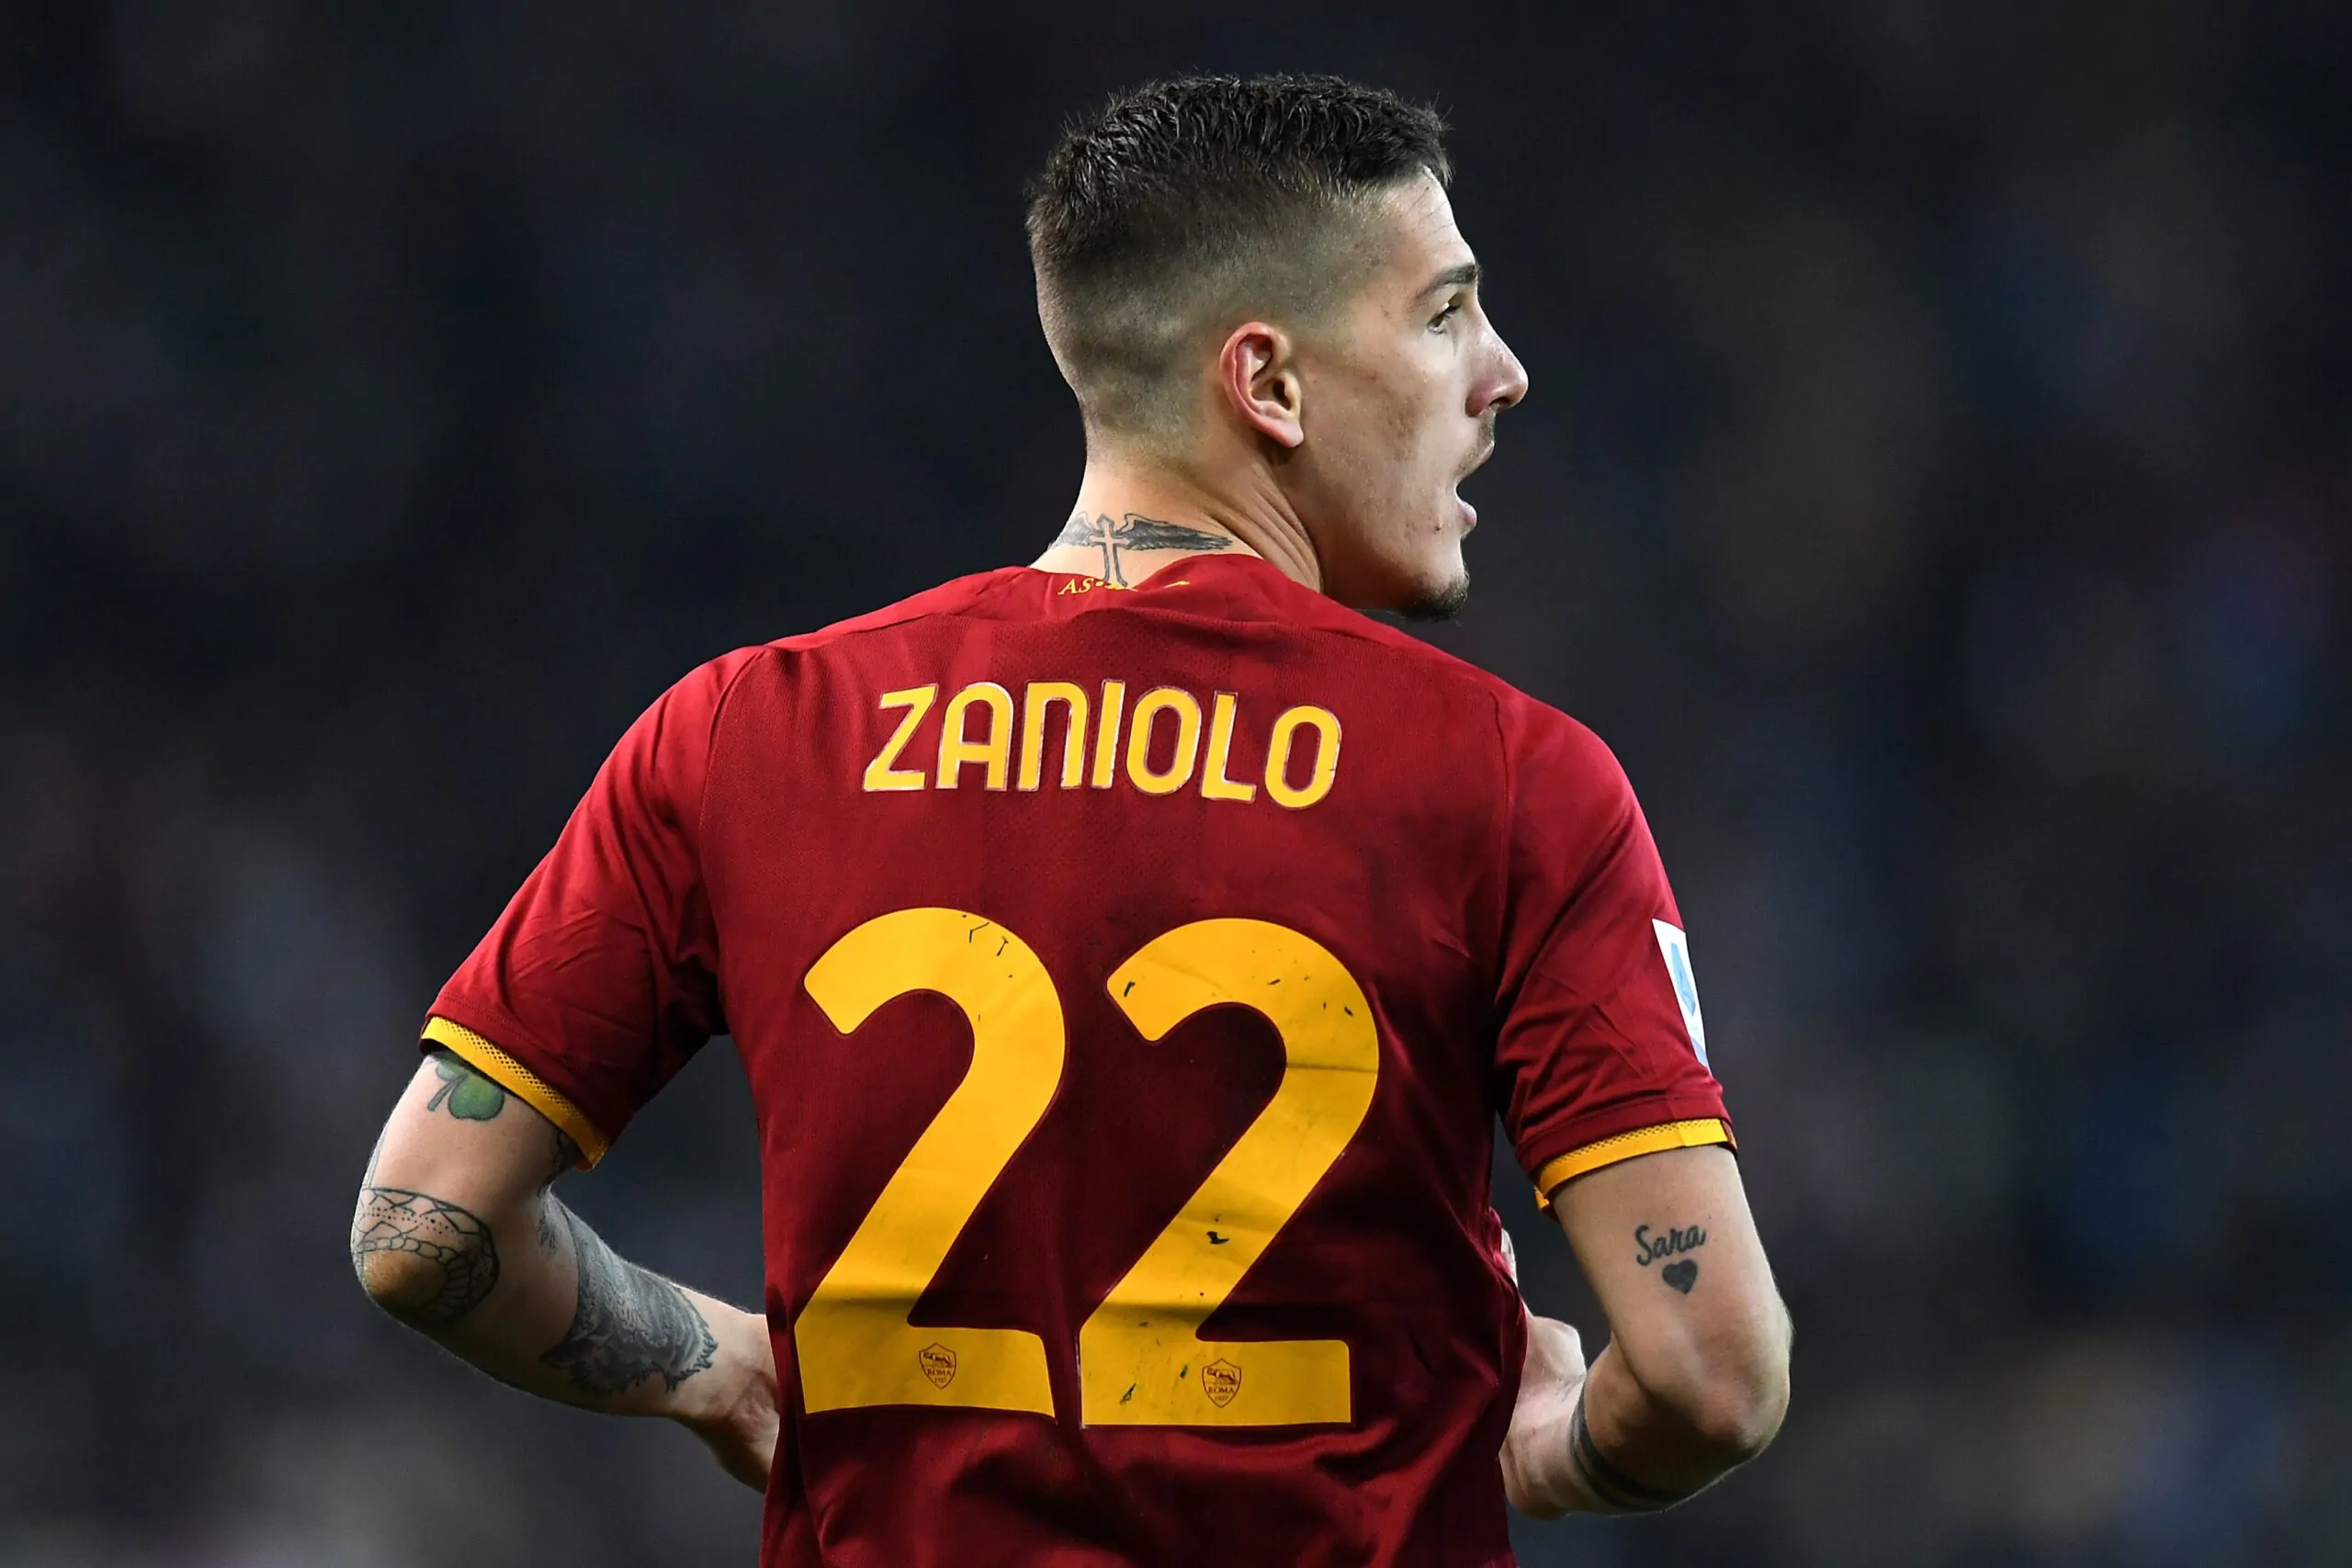 Dal Tottenham offerta monstre per Zaniolo: la posizione della Roma